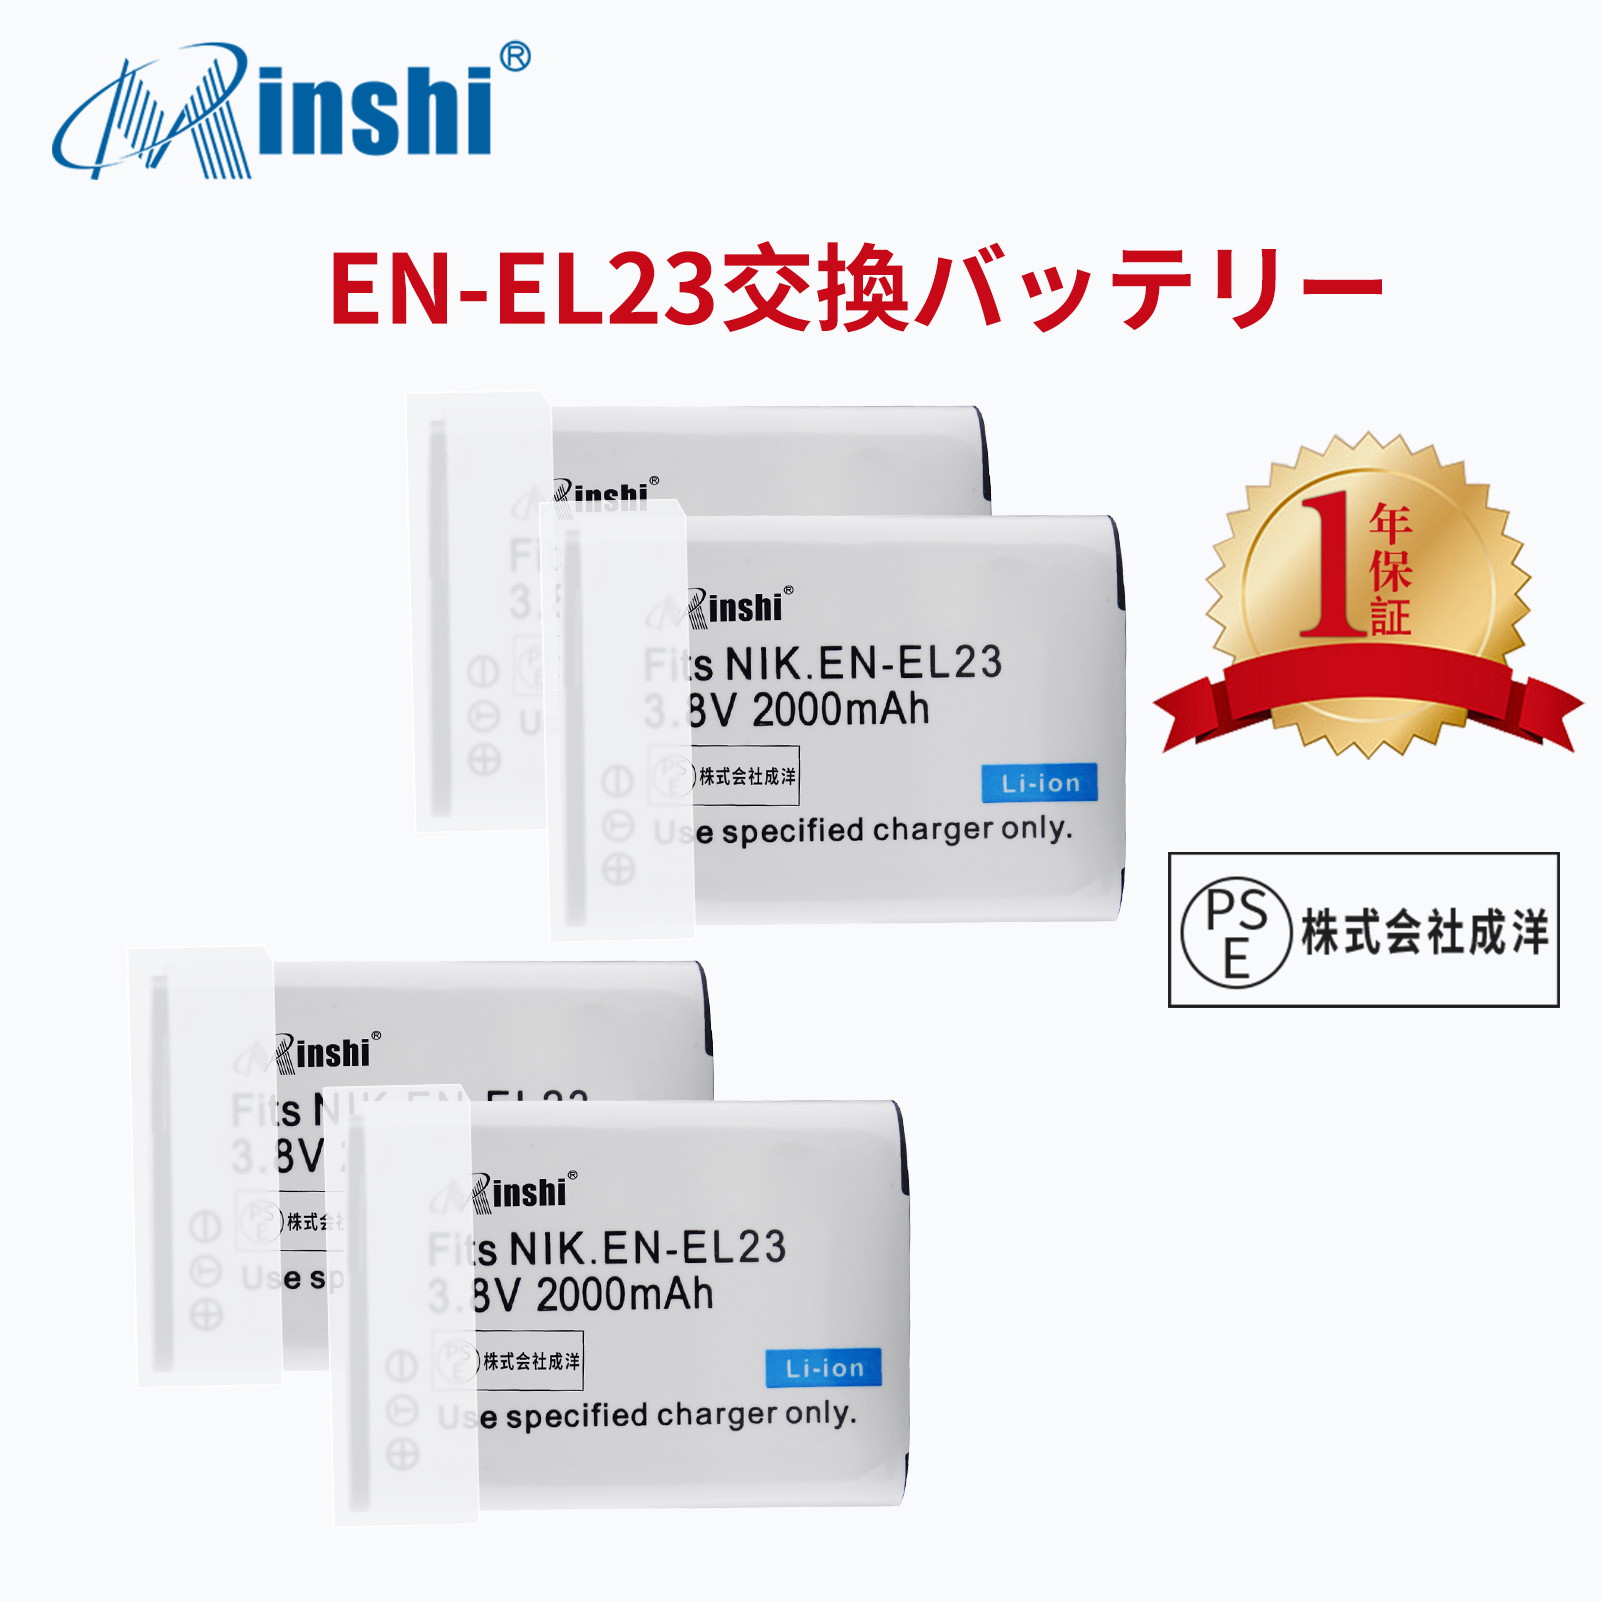 【4個セット】 minshi NIKON P900 対応  互換バッテリー 2000mAh PSE認定済 高品質 EN-EL23 交換用バッテリー